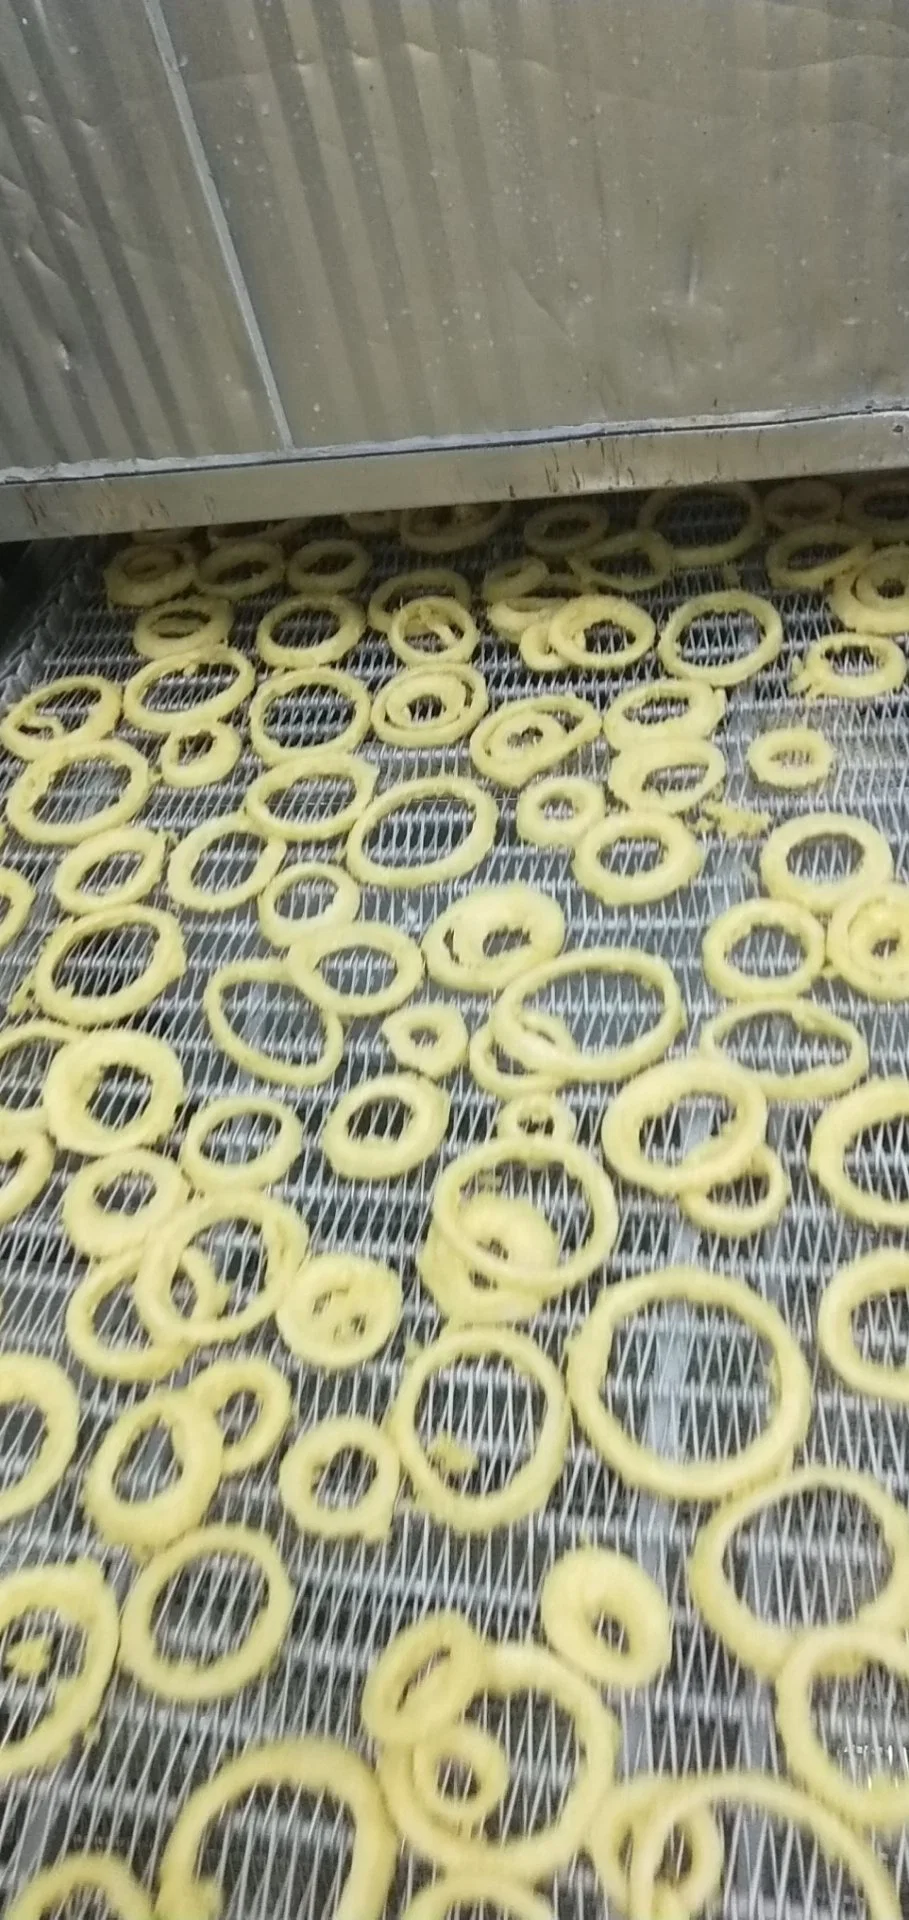 Alimentos congelados assolado congelada do anel de cebola comida Fringer